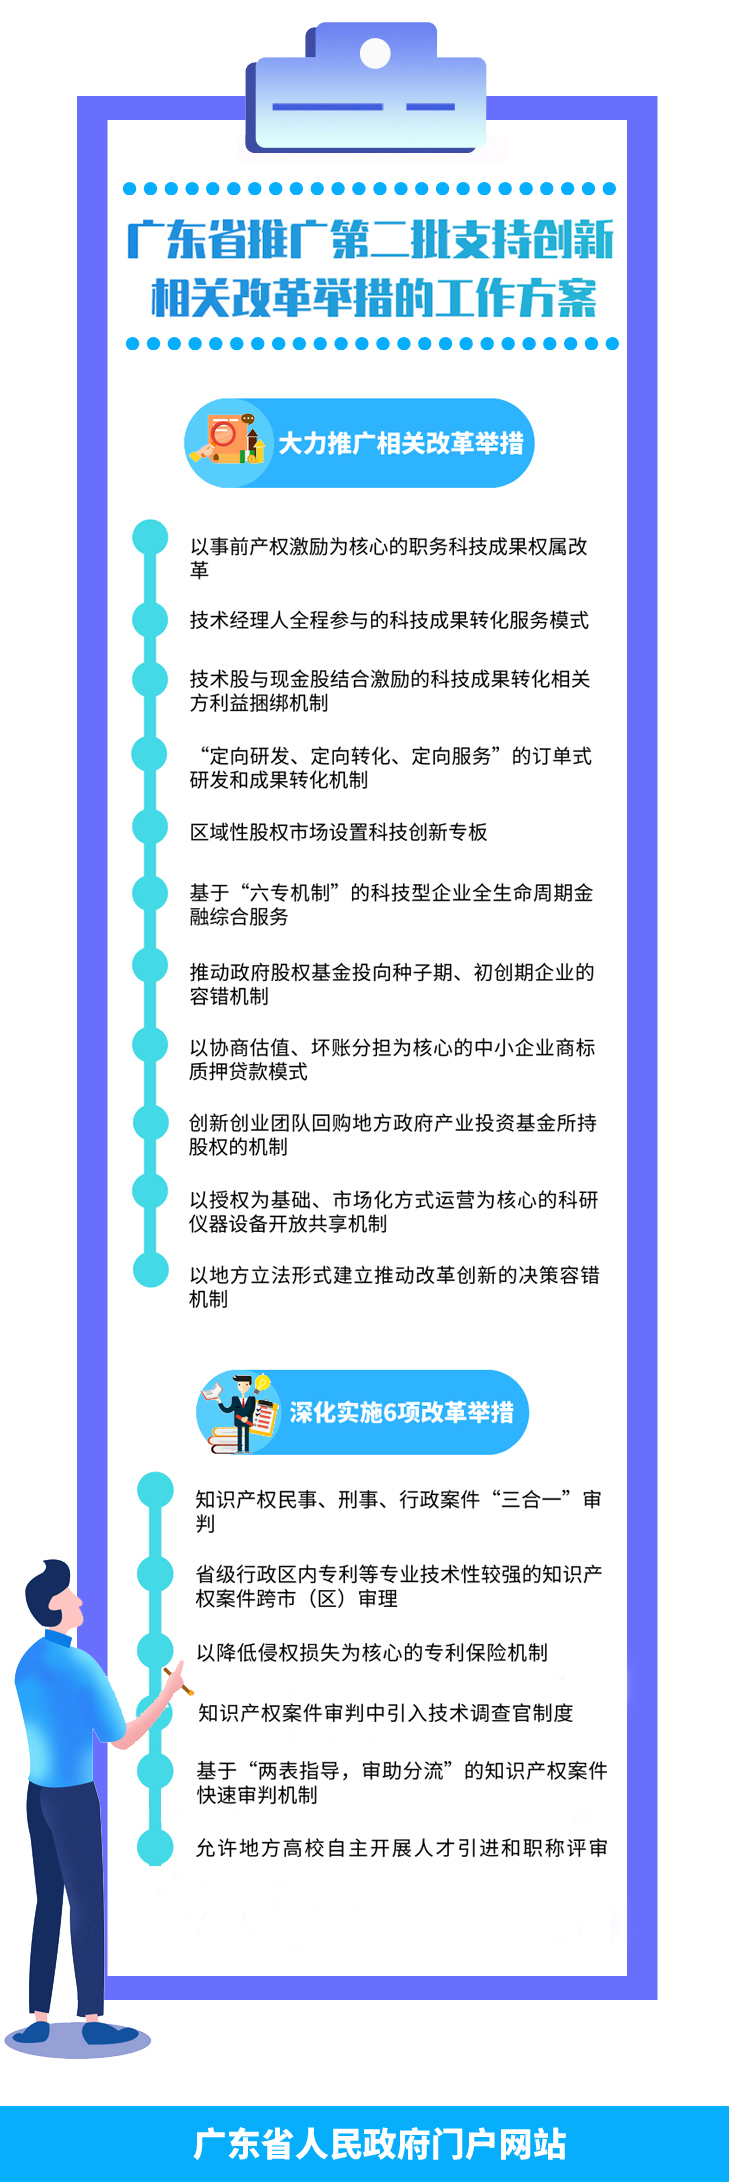 一图读懂广东省推广第二批支持创新相关改革举措工作方案.jpg